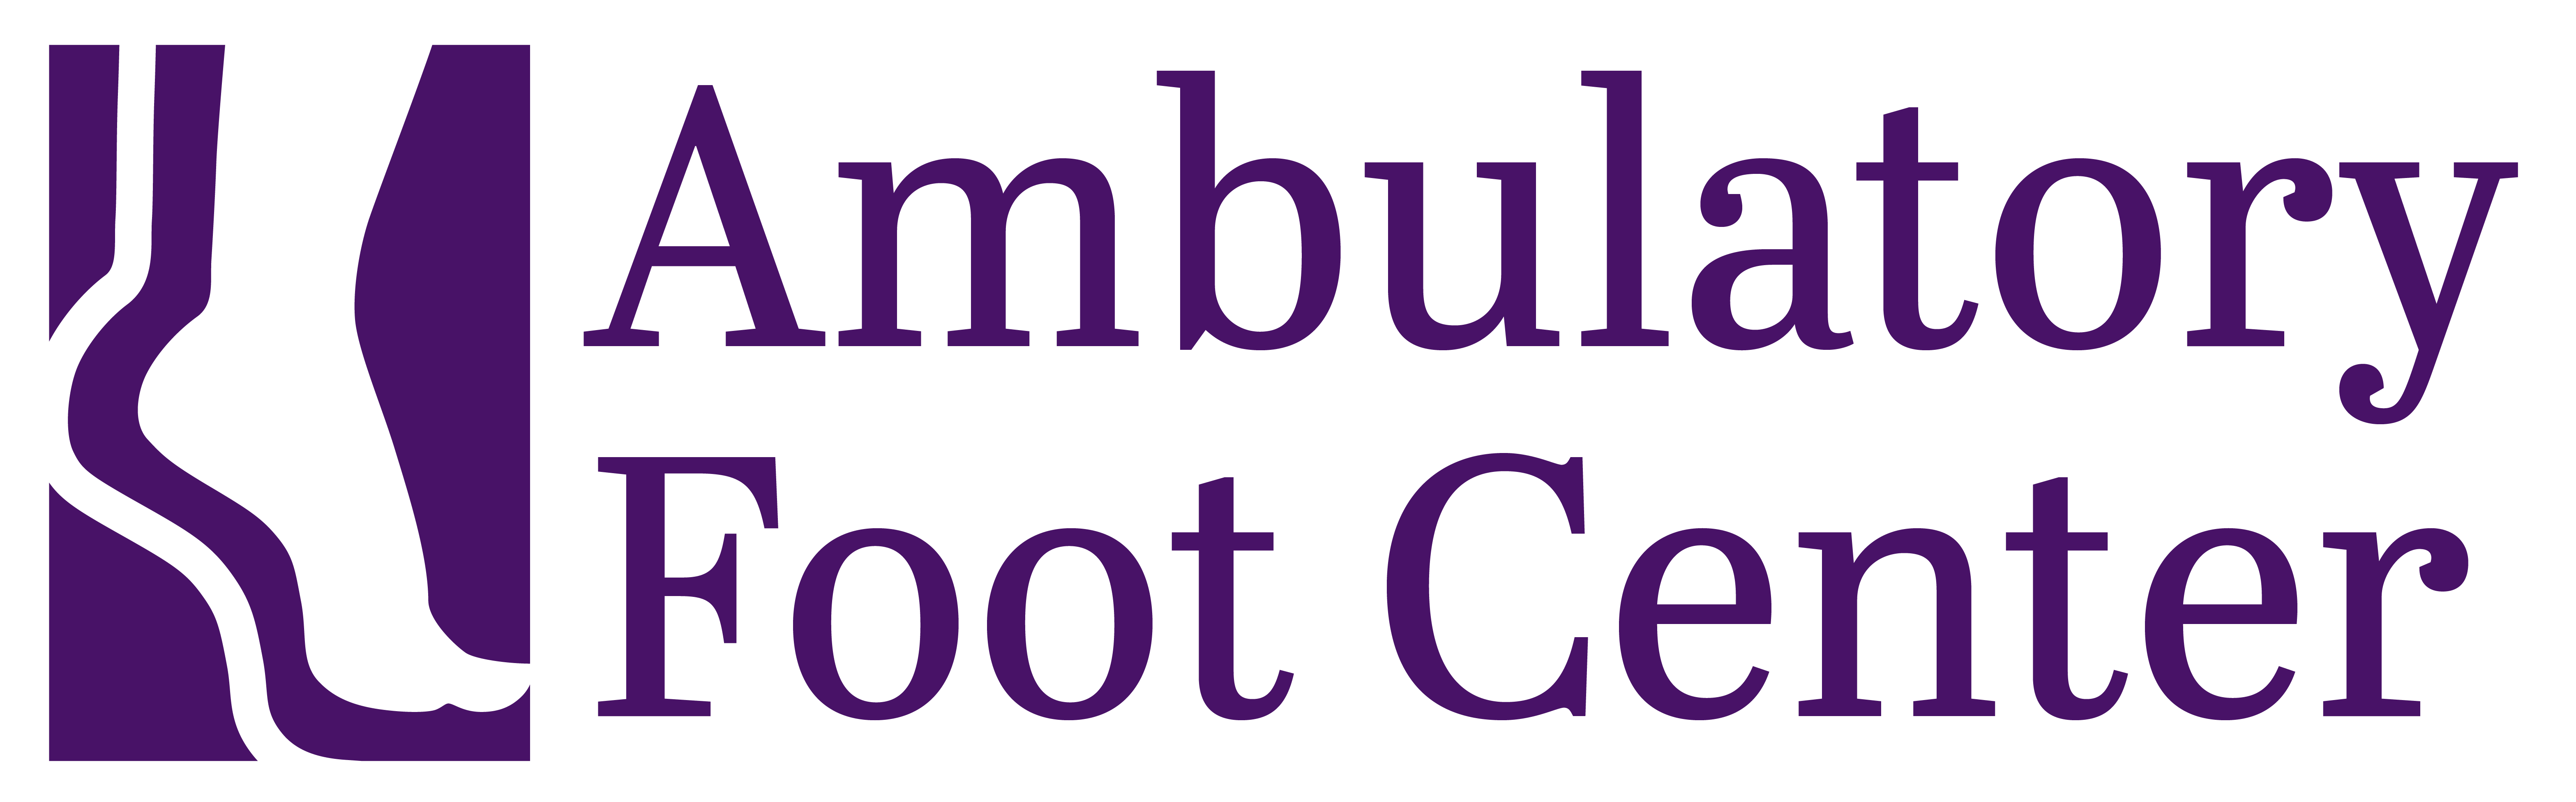 Ambulatory Foot Center Logo